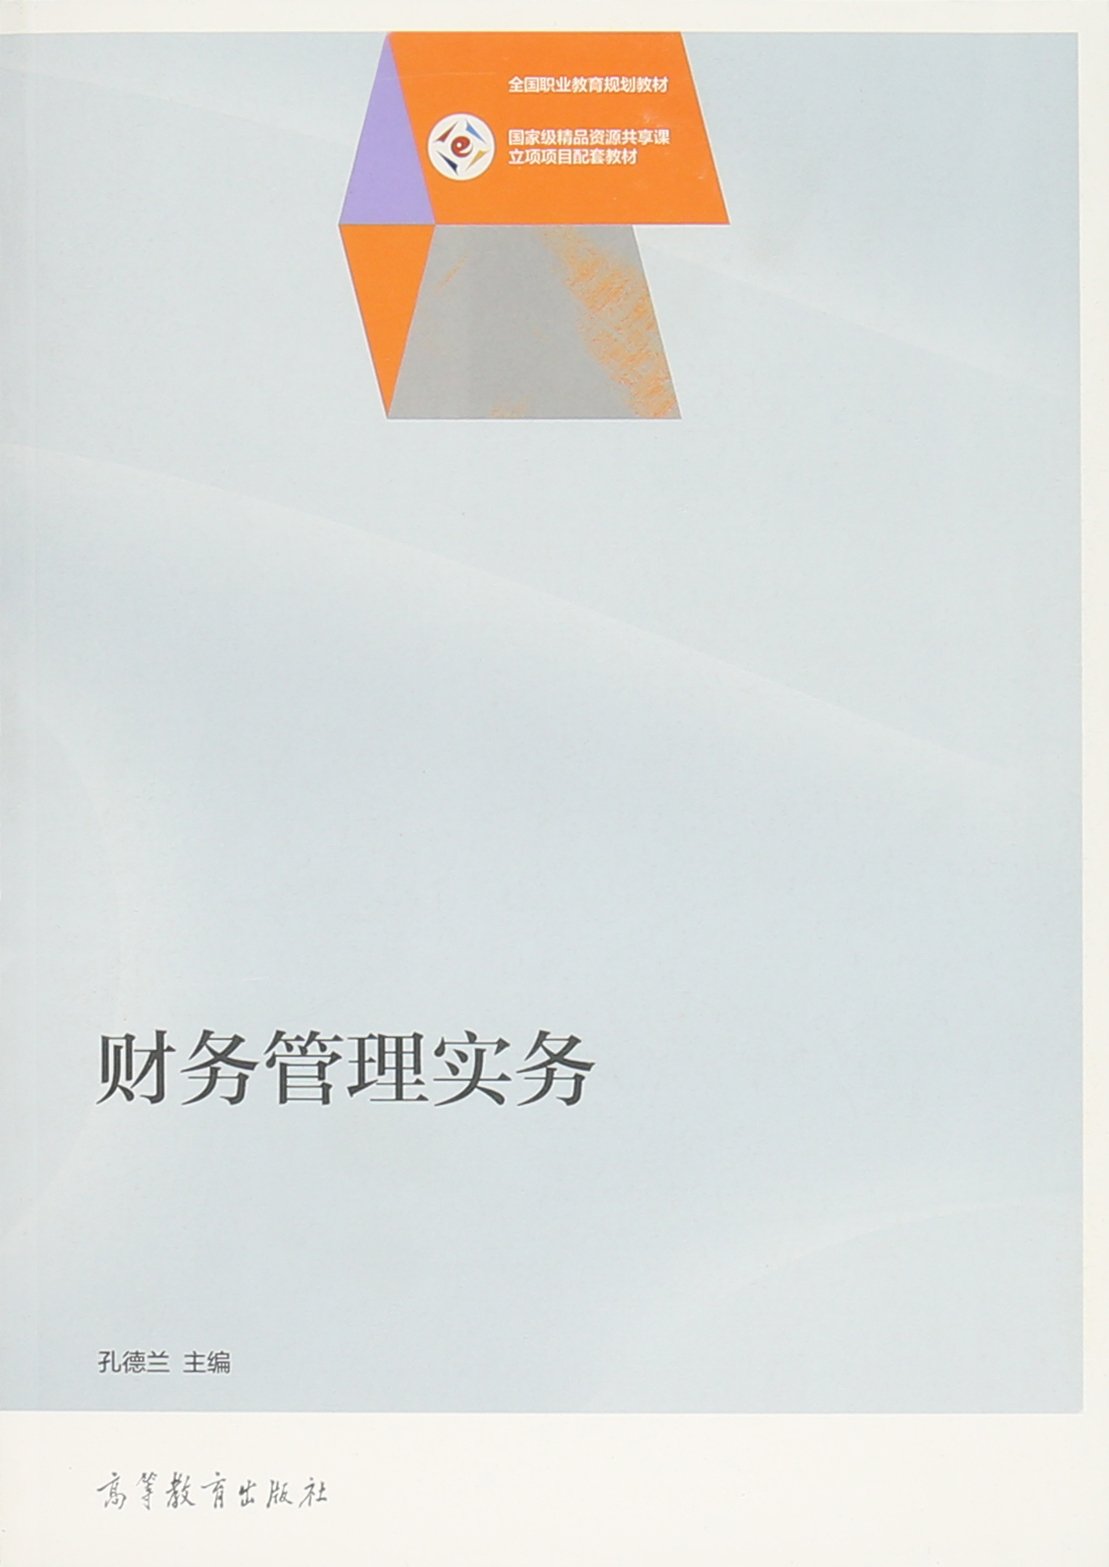 財務管理實務(2015年高等教育出版社出版的圖書)